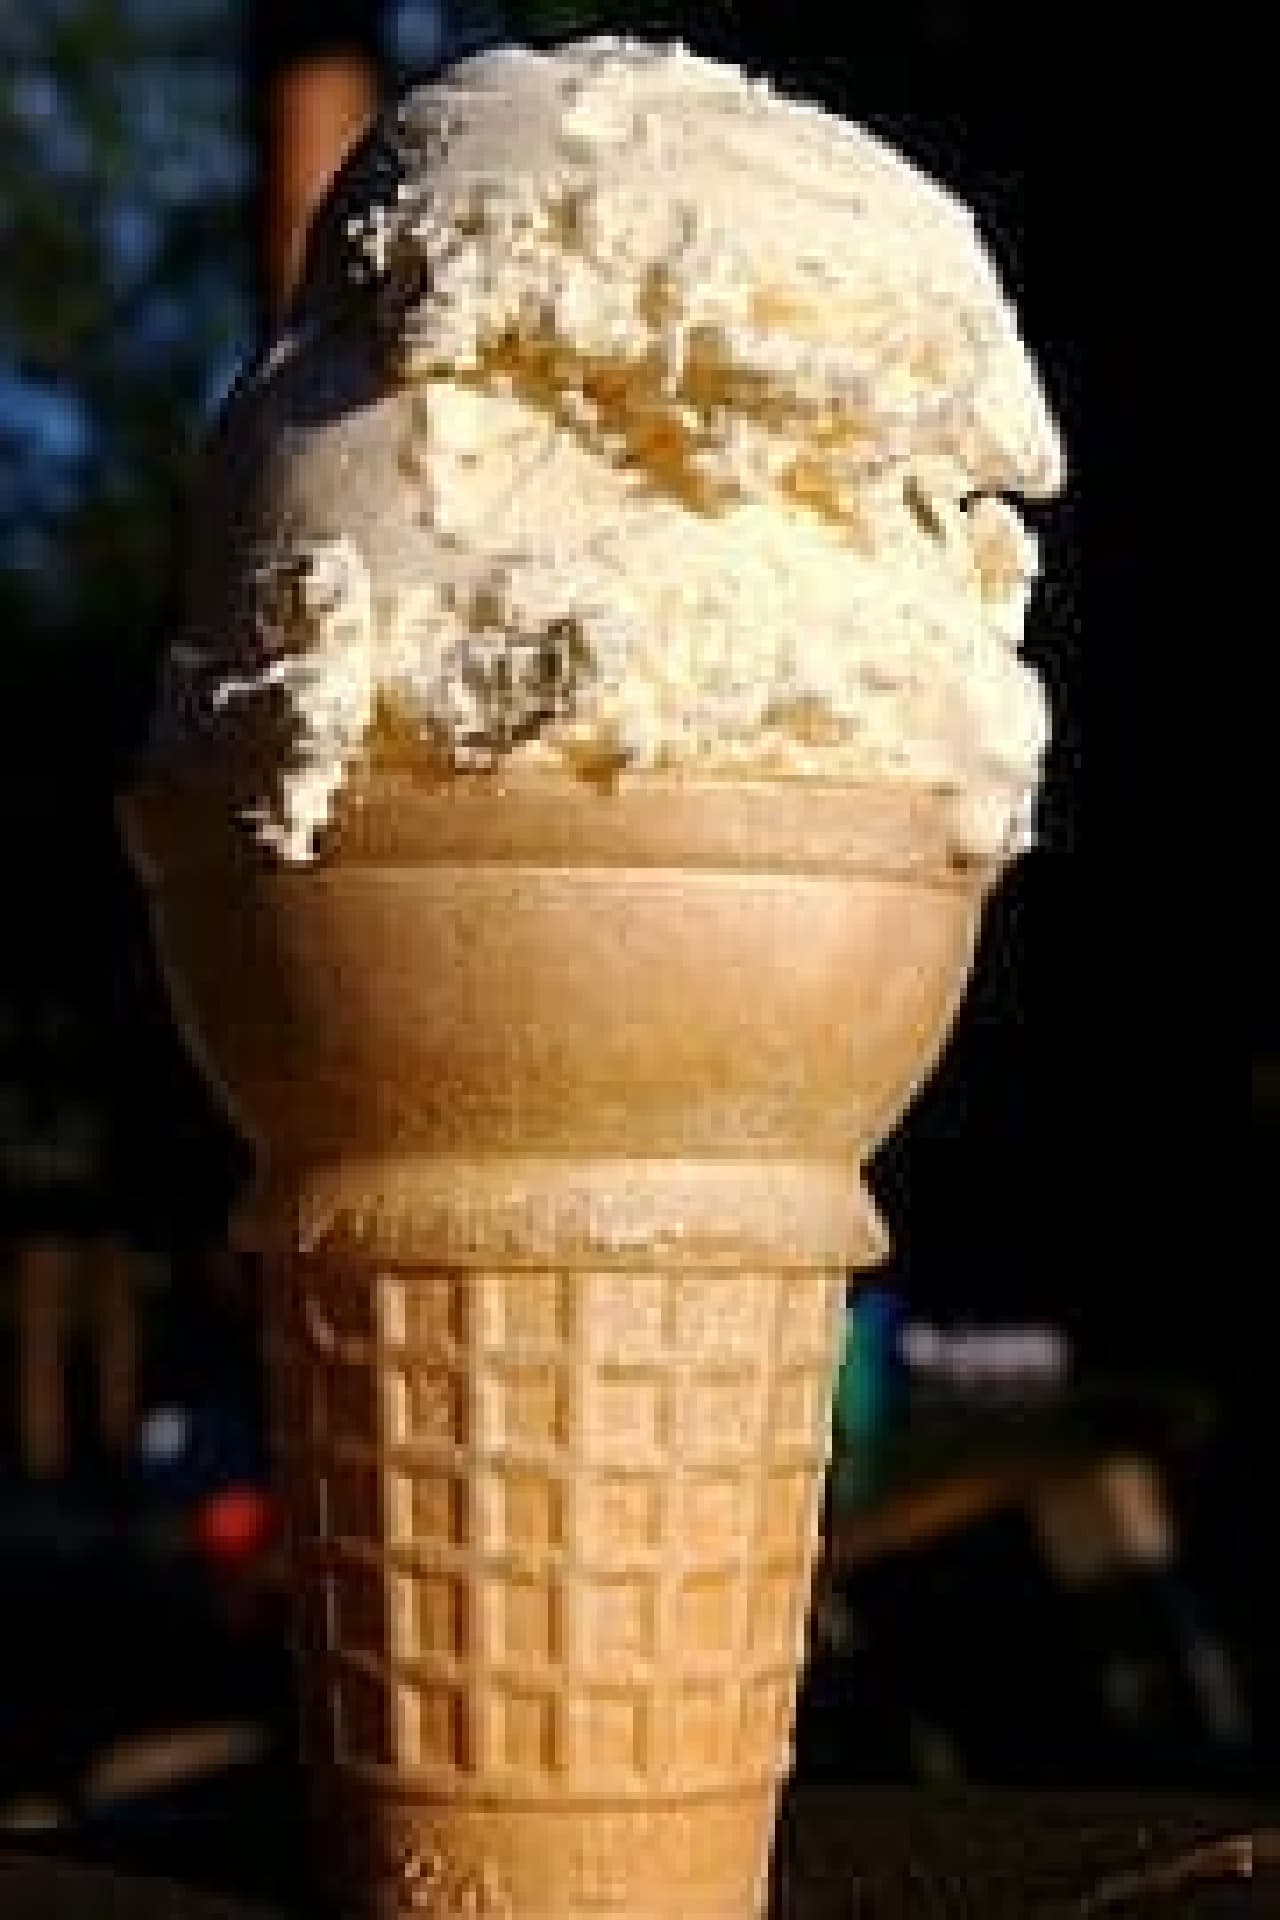 Vanilla ice cream. It looks very ordinary.